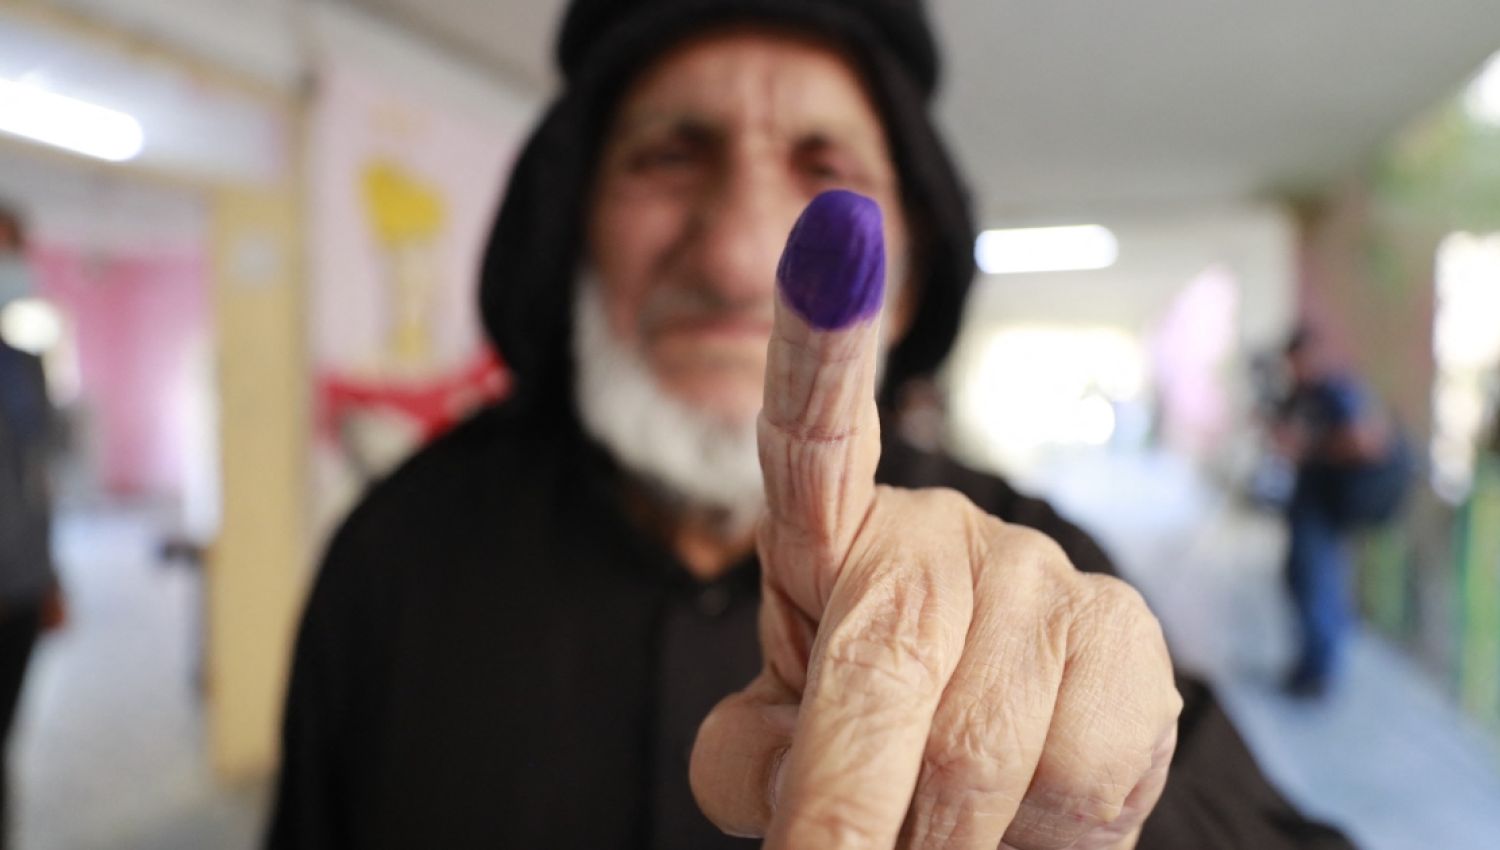 انطلاق الانتخابات العراقية: لأوسع مشاركة شعبية آمنة